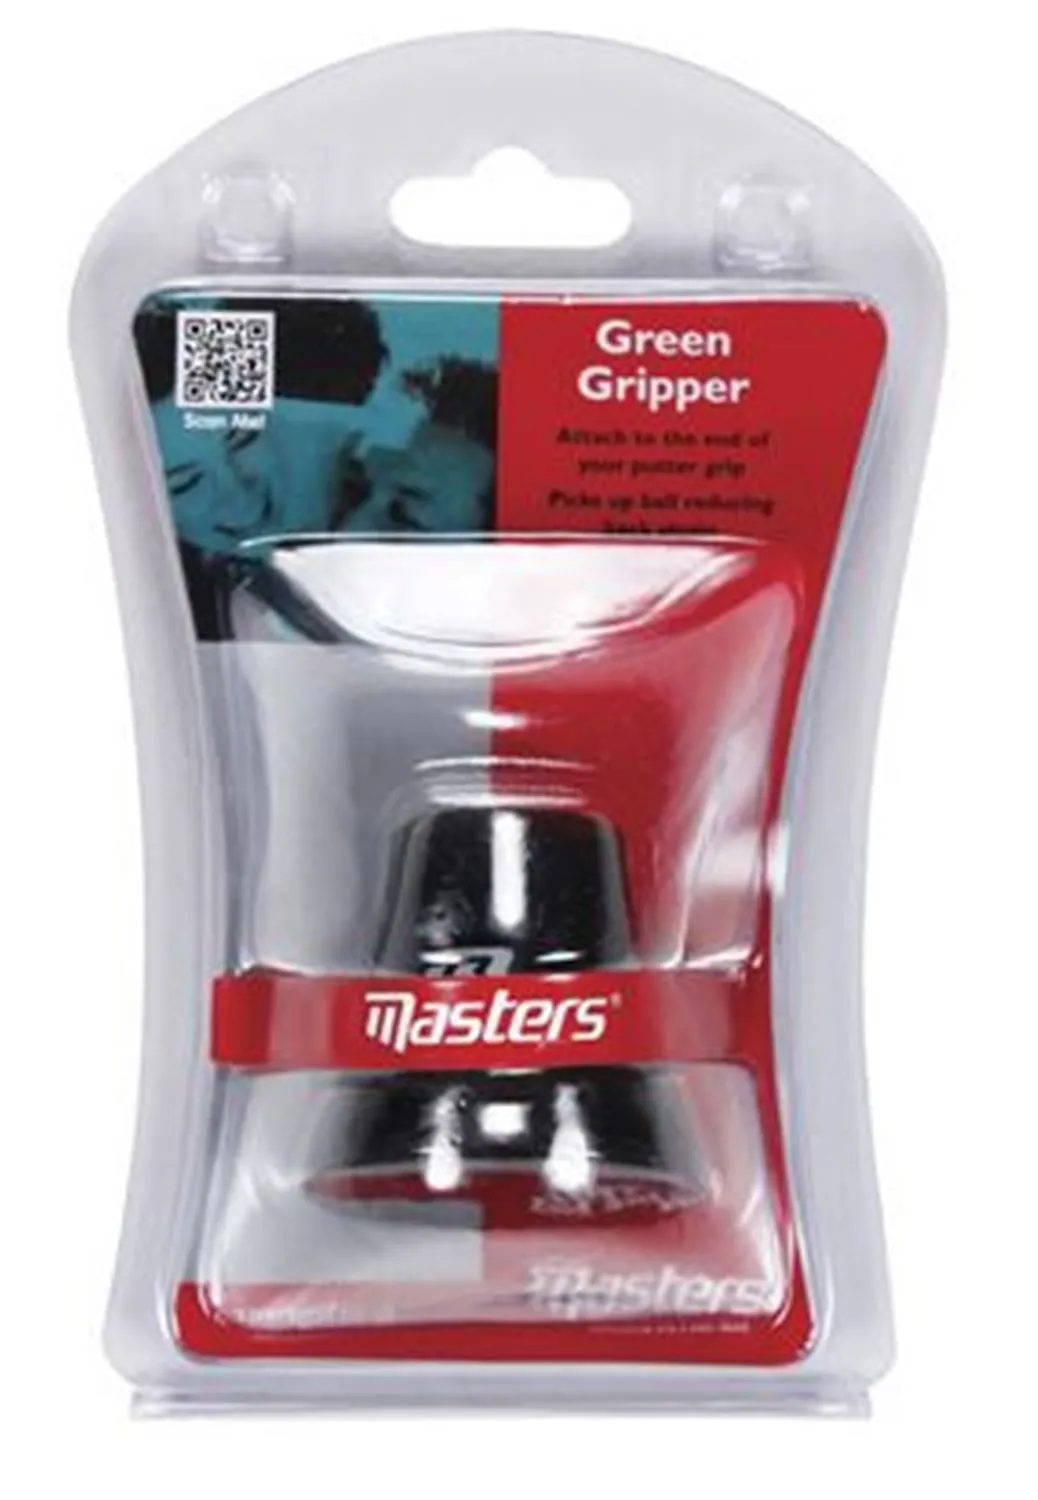 Green gripper